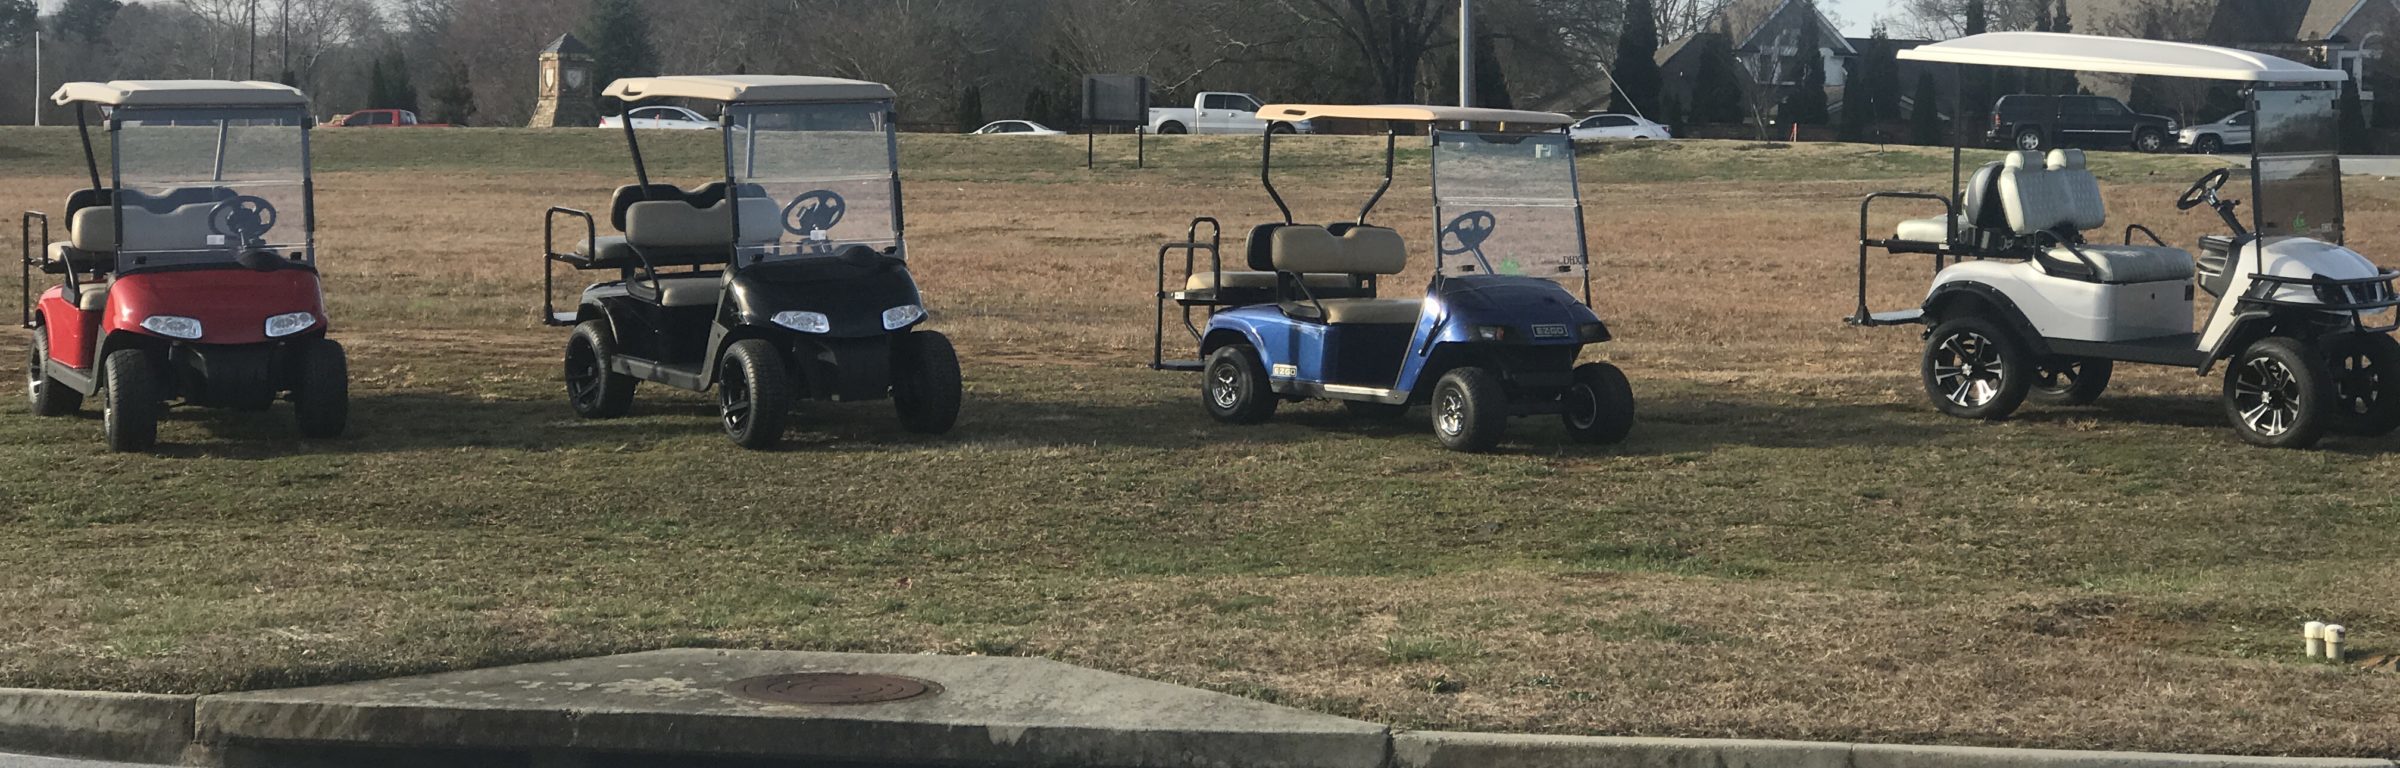 Custom Golf Carts, Road Atlanta